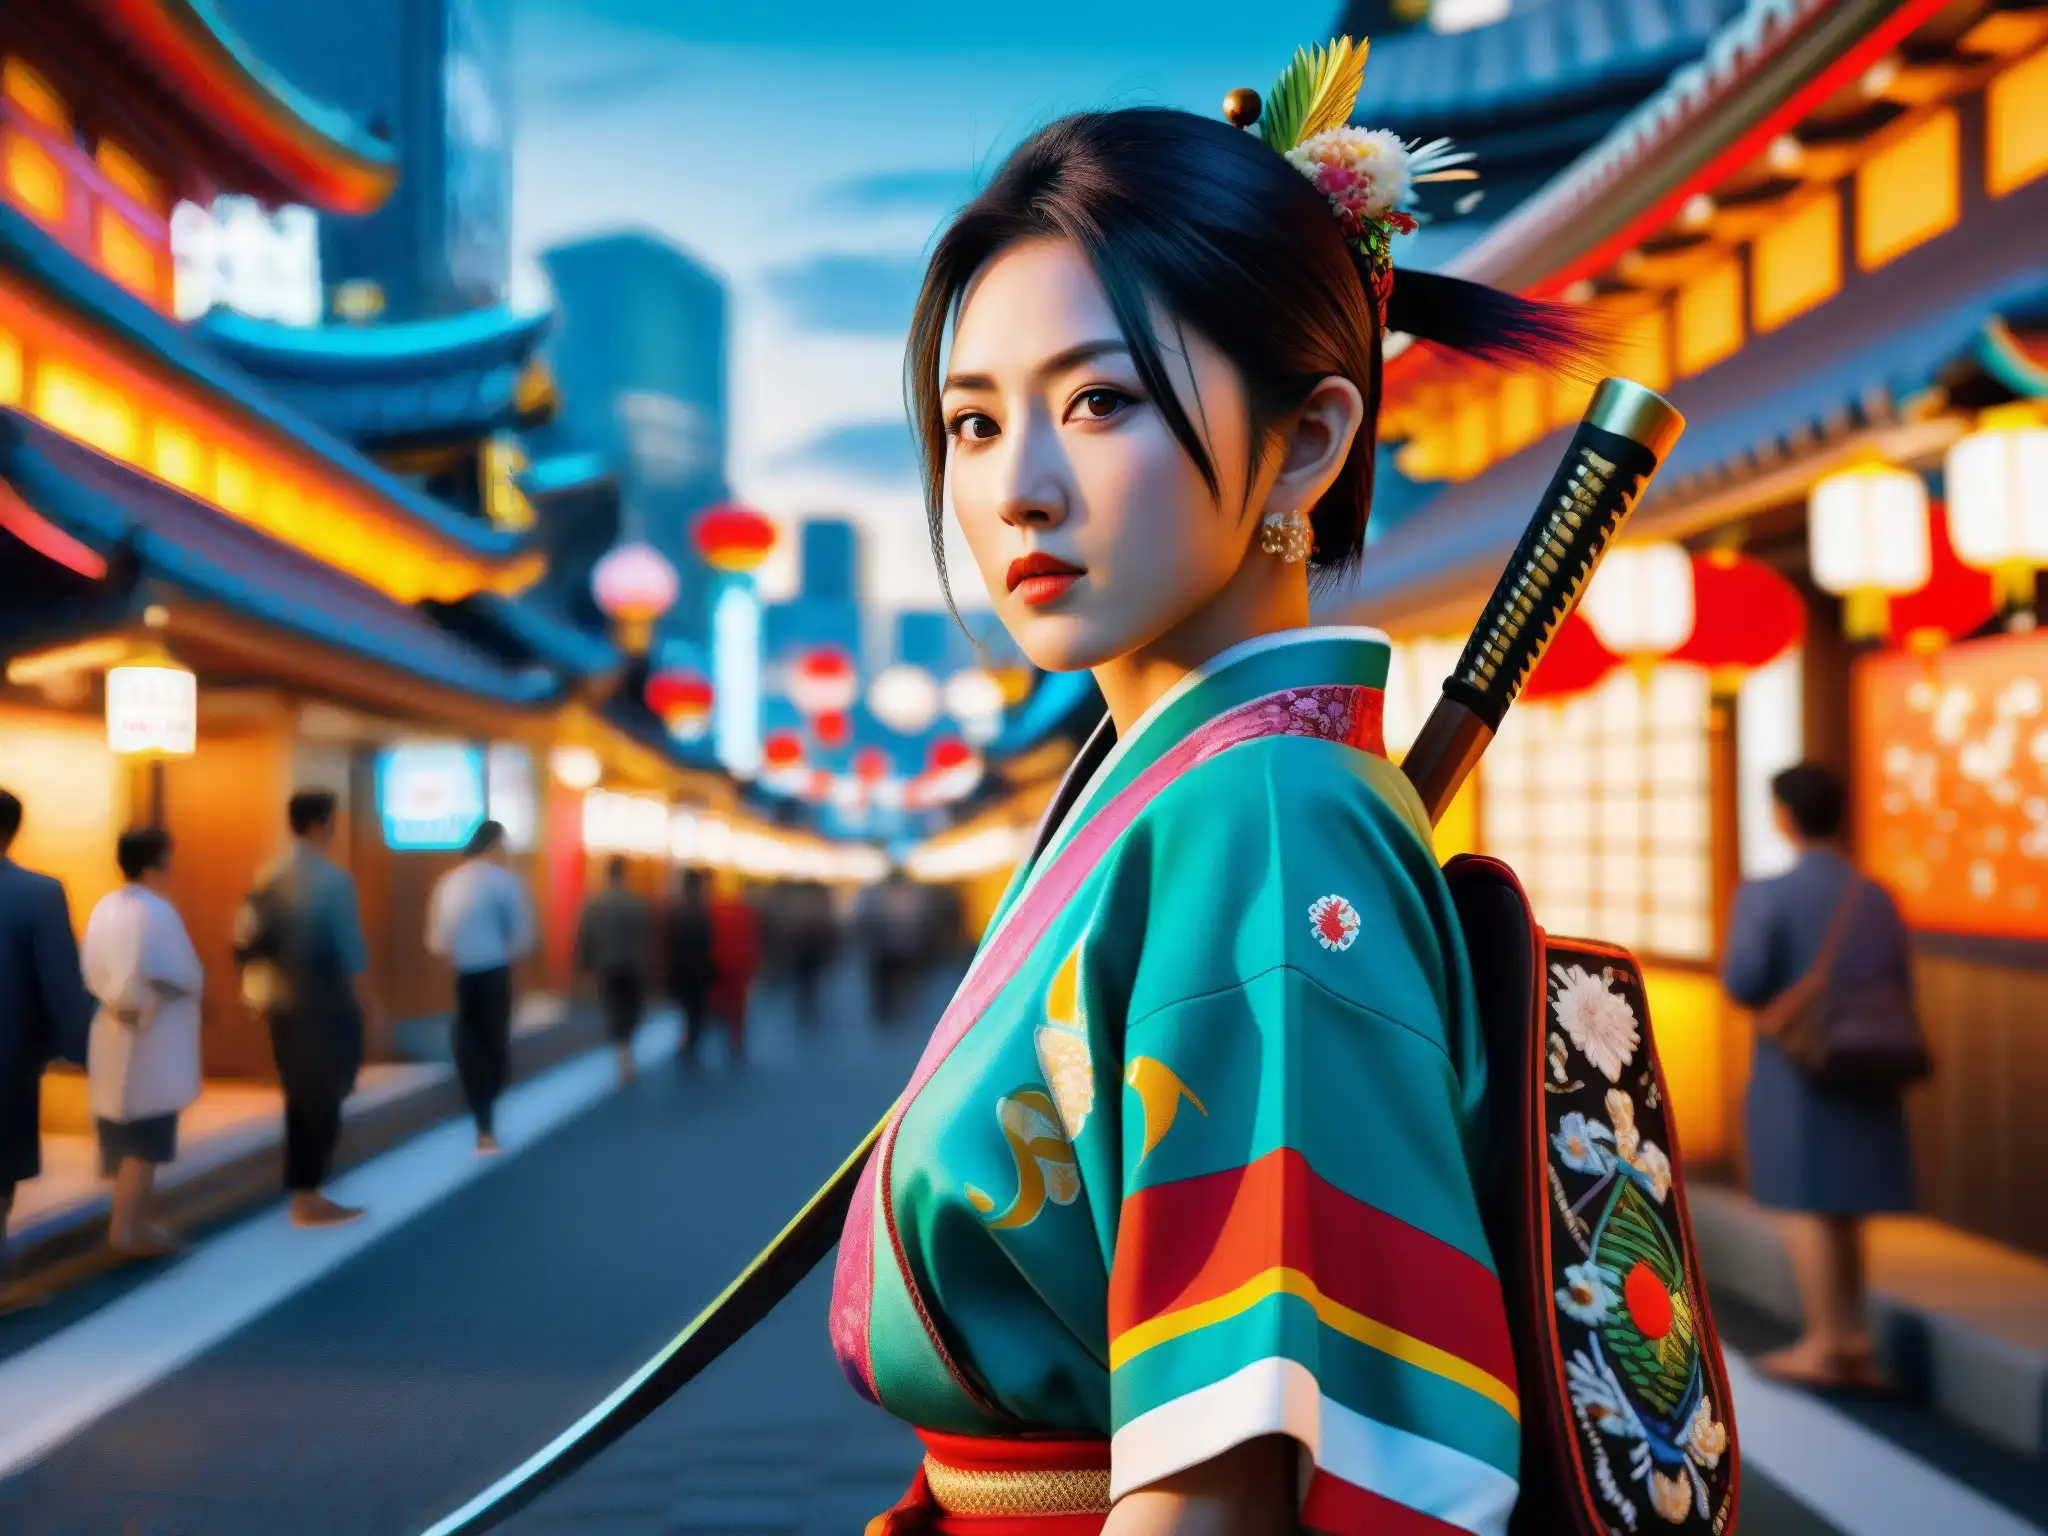 Personaje de videojuego japonés contemporáneo con atuendo tradicional y arma mítica en Tokio, resucitando mitos folklore japonés